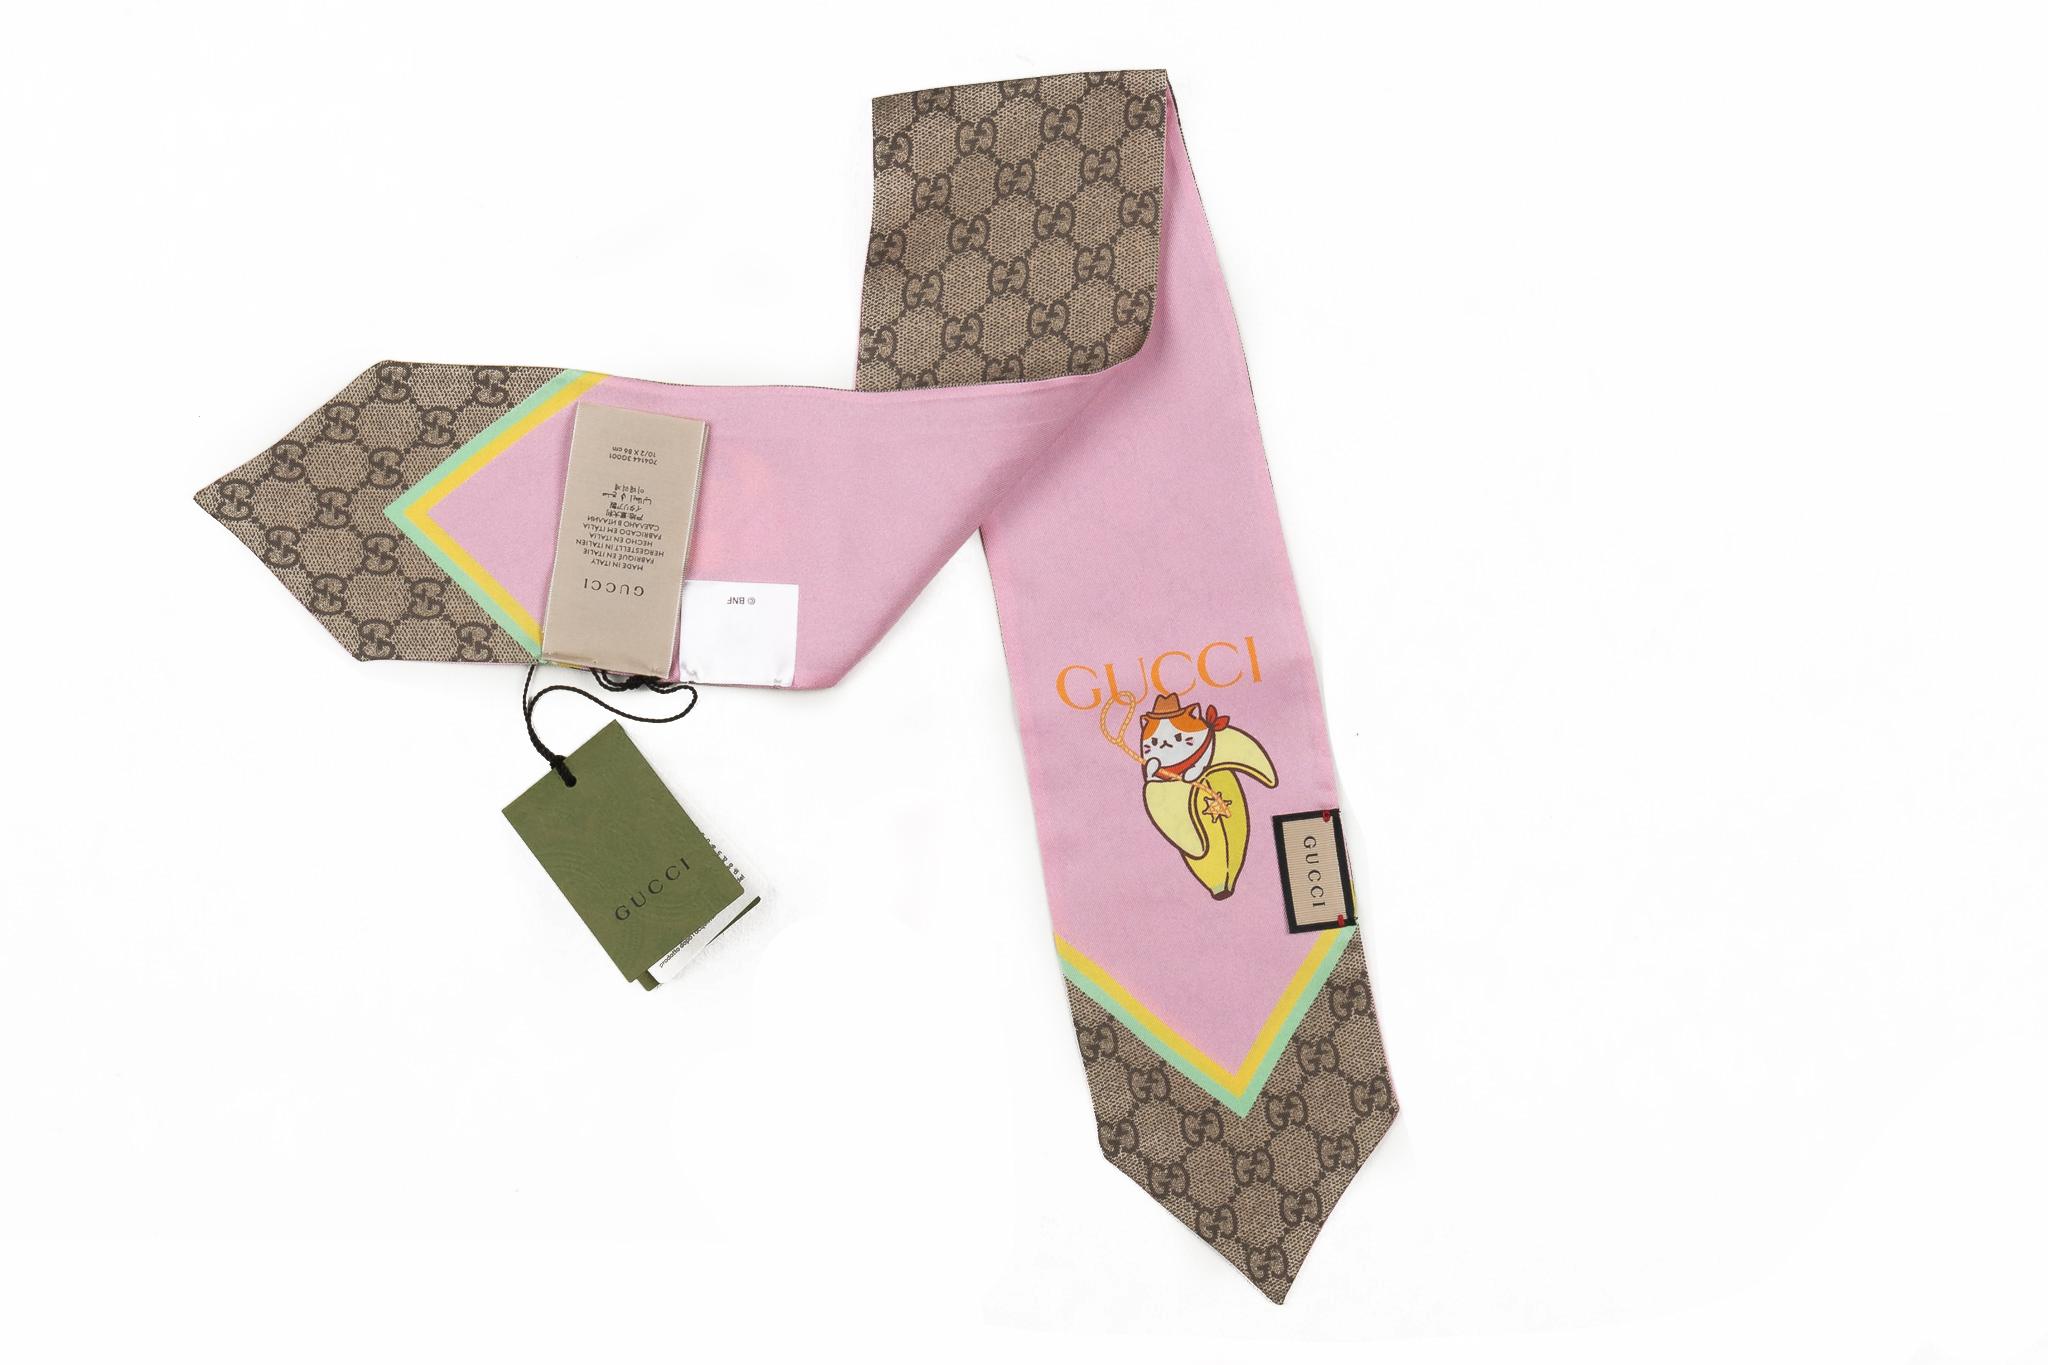 Bandeau en soie Gucci neuf à l'état neuf, imprimé arc-en-ciel et bananya en rose et imprimé guccissima original. 
Livré avec son étiquette, pas de boîte.